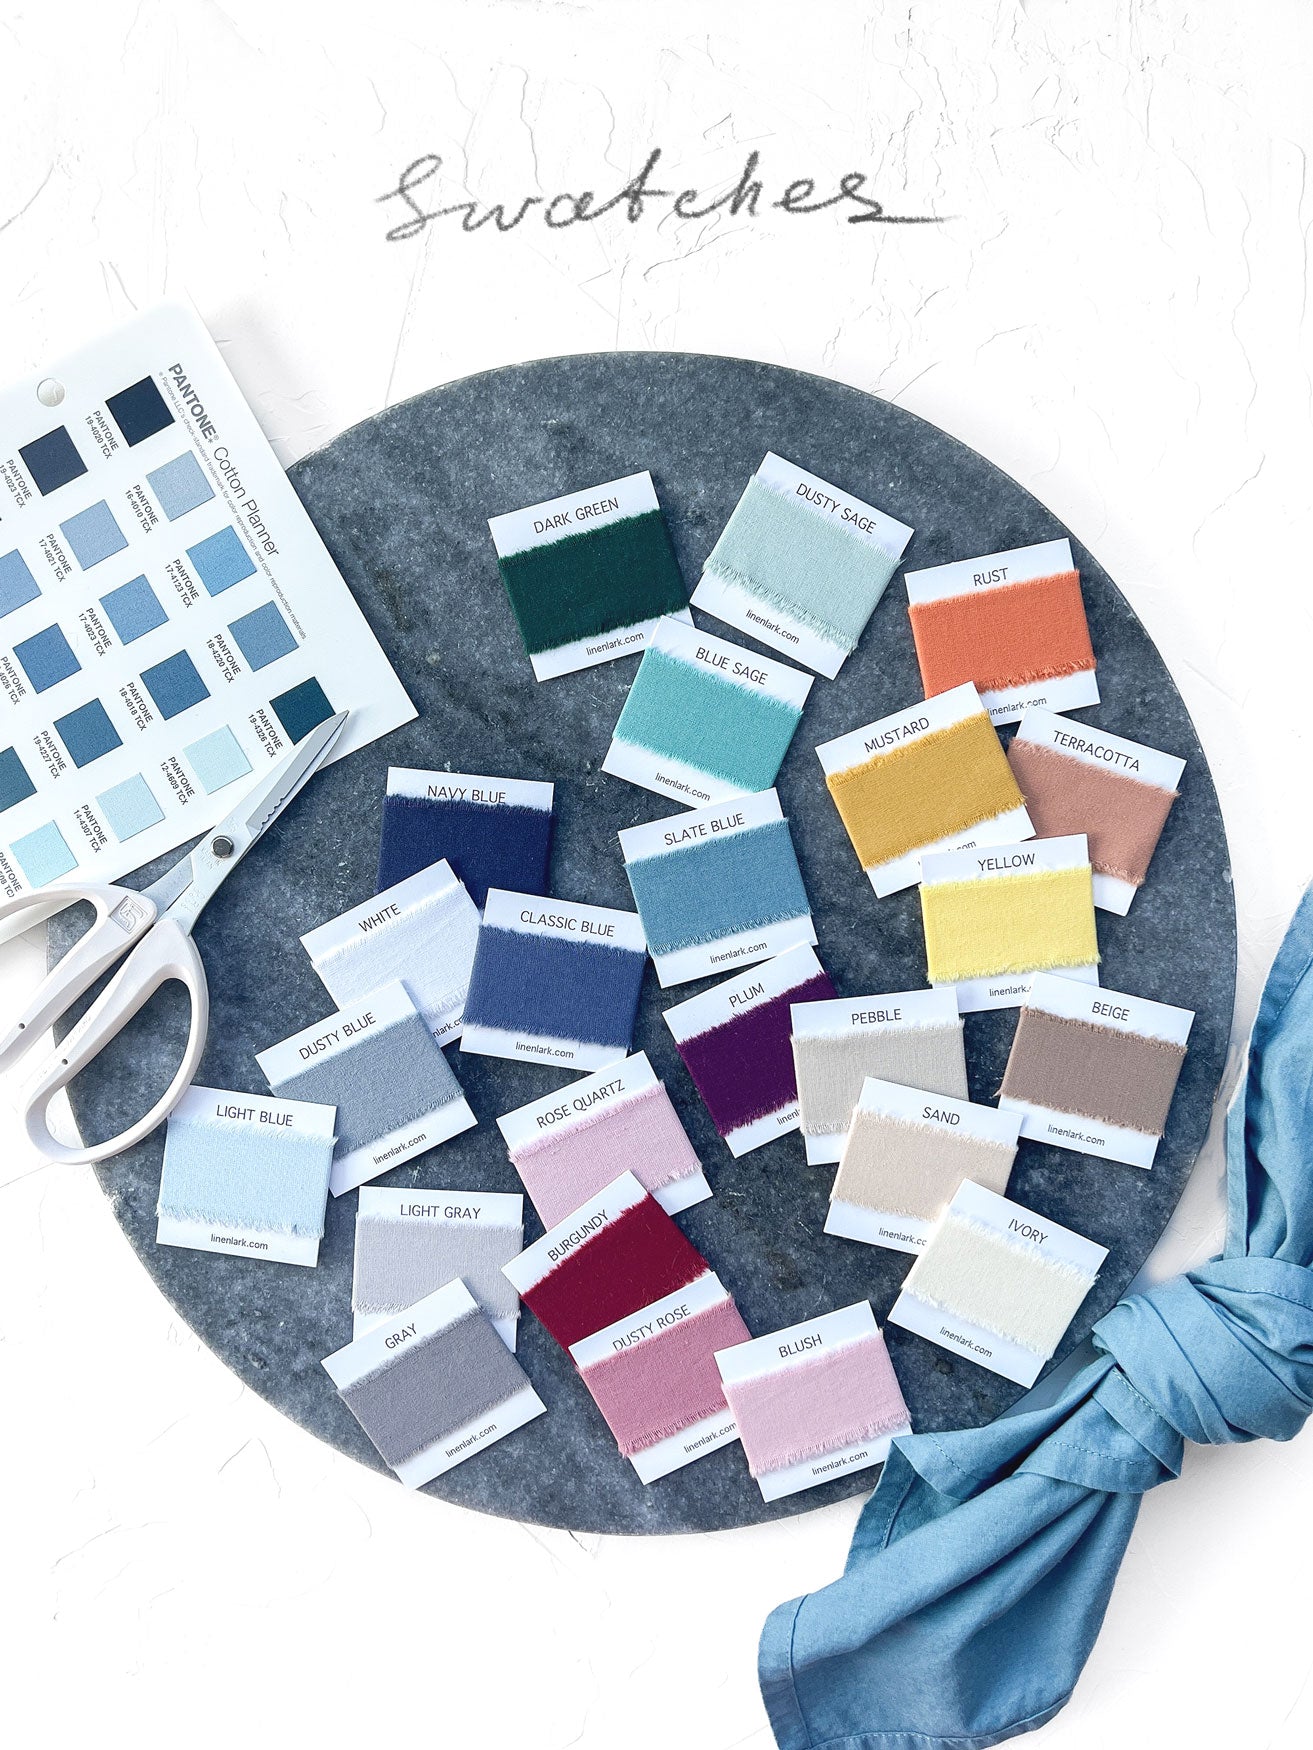 Color samples for napkins